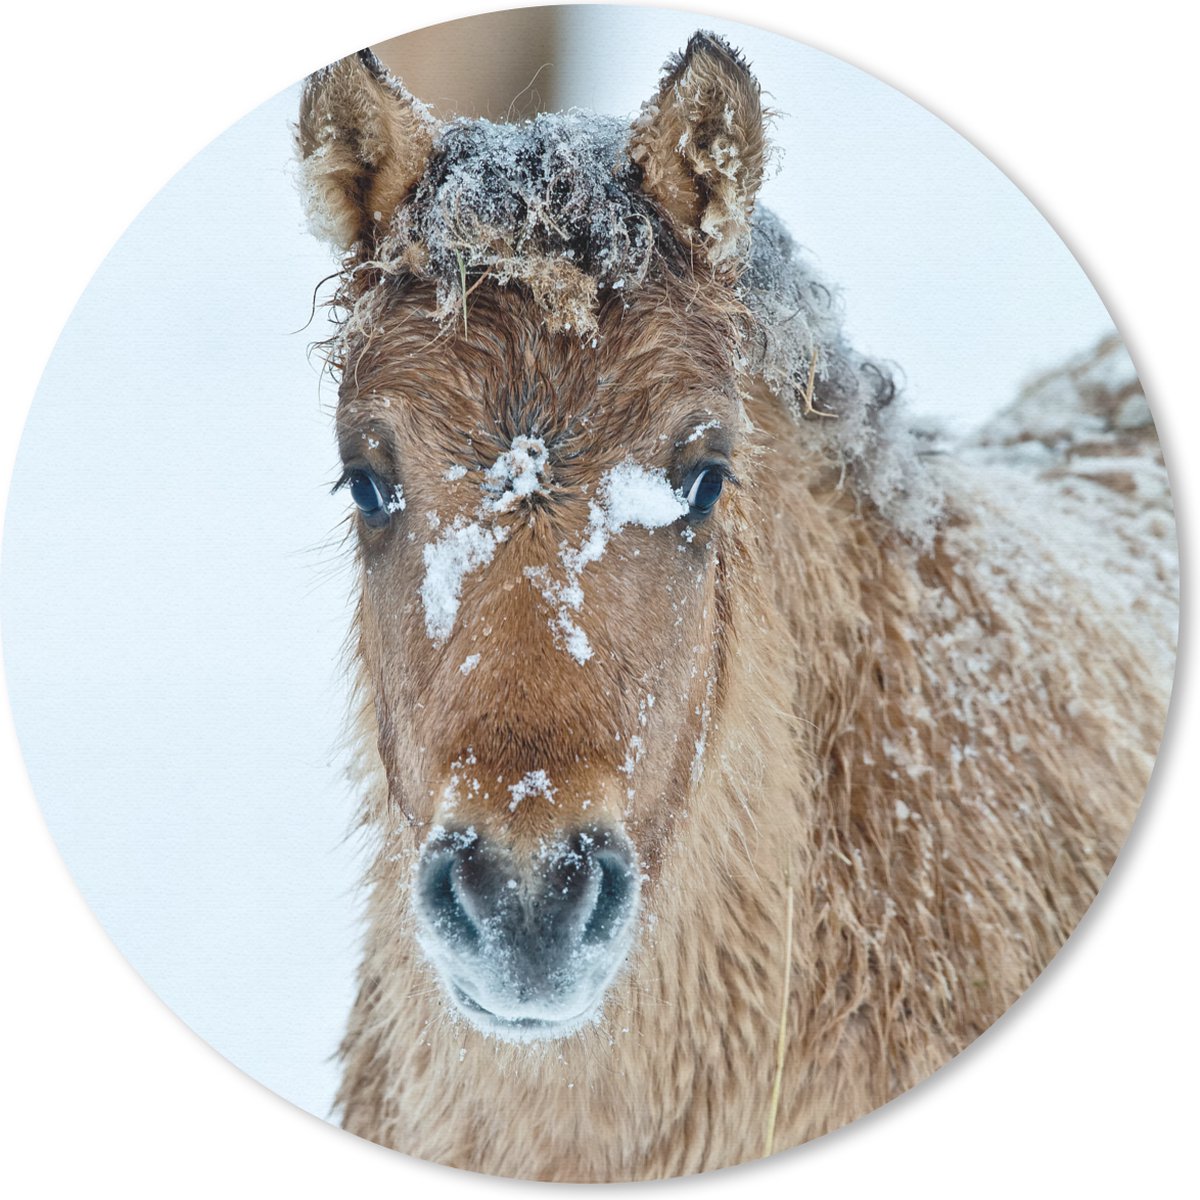 Muismat - Mousepad - Rond - Jong fjord paard bedekt met sneeuw - 40x40 cm - Ronde muismat